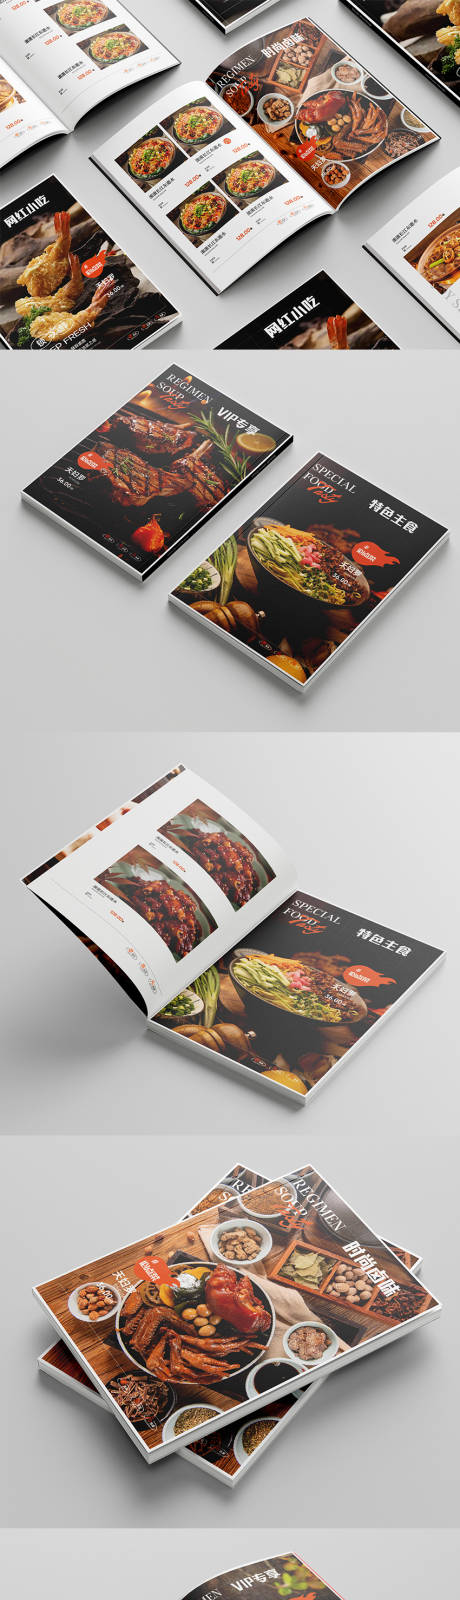 餐品美食画册